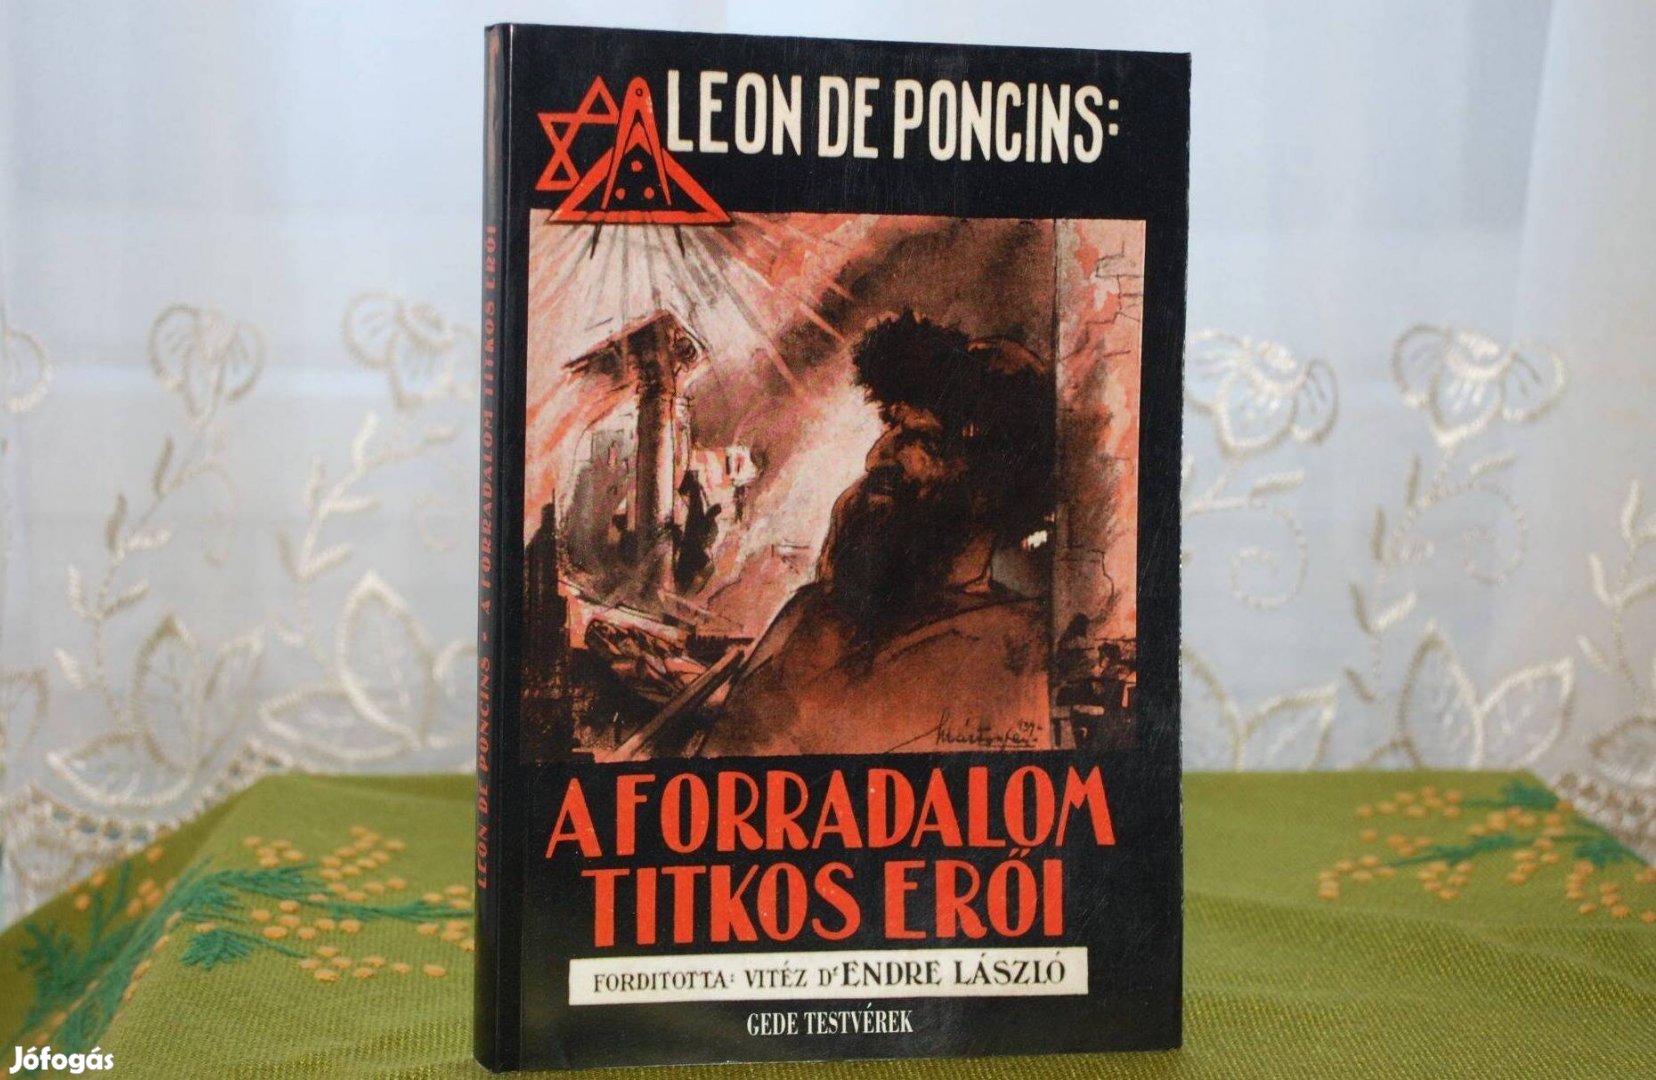 Leon de Poncins: A forradalom titkos erői